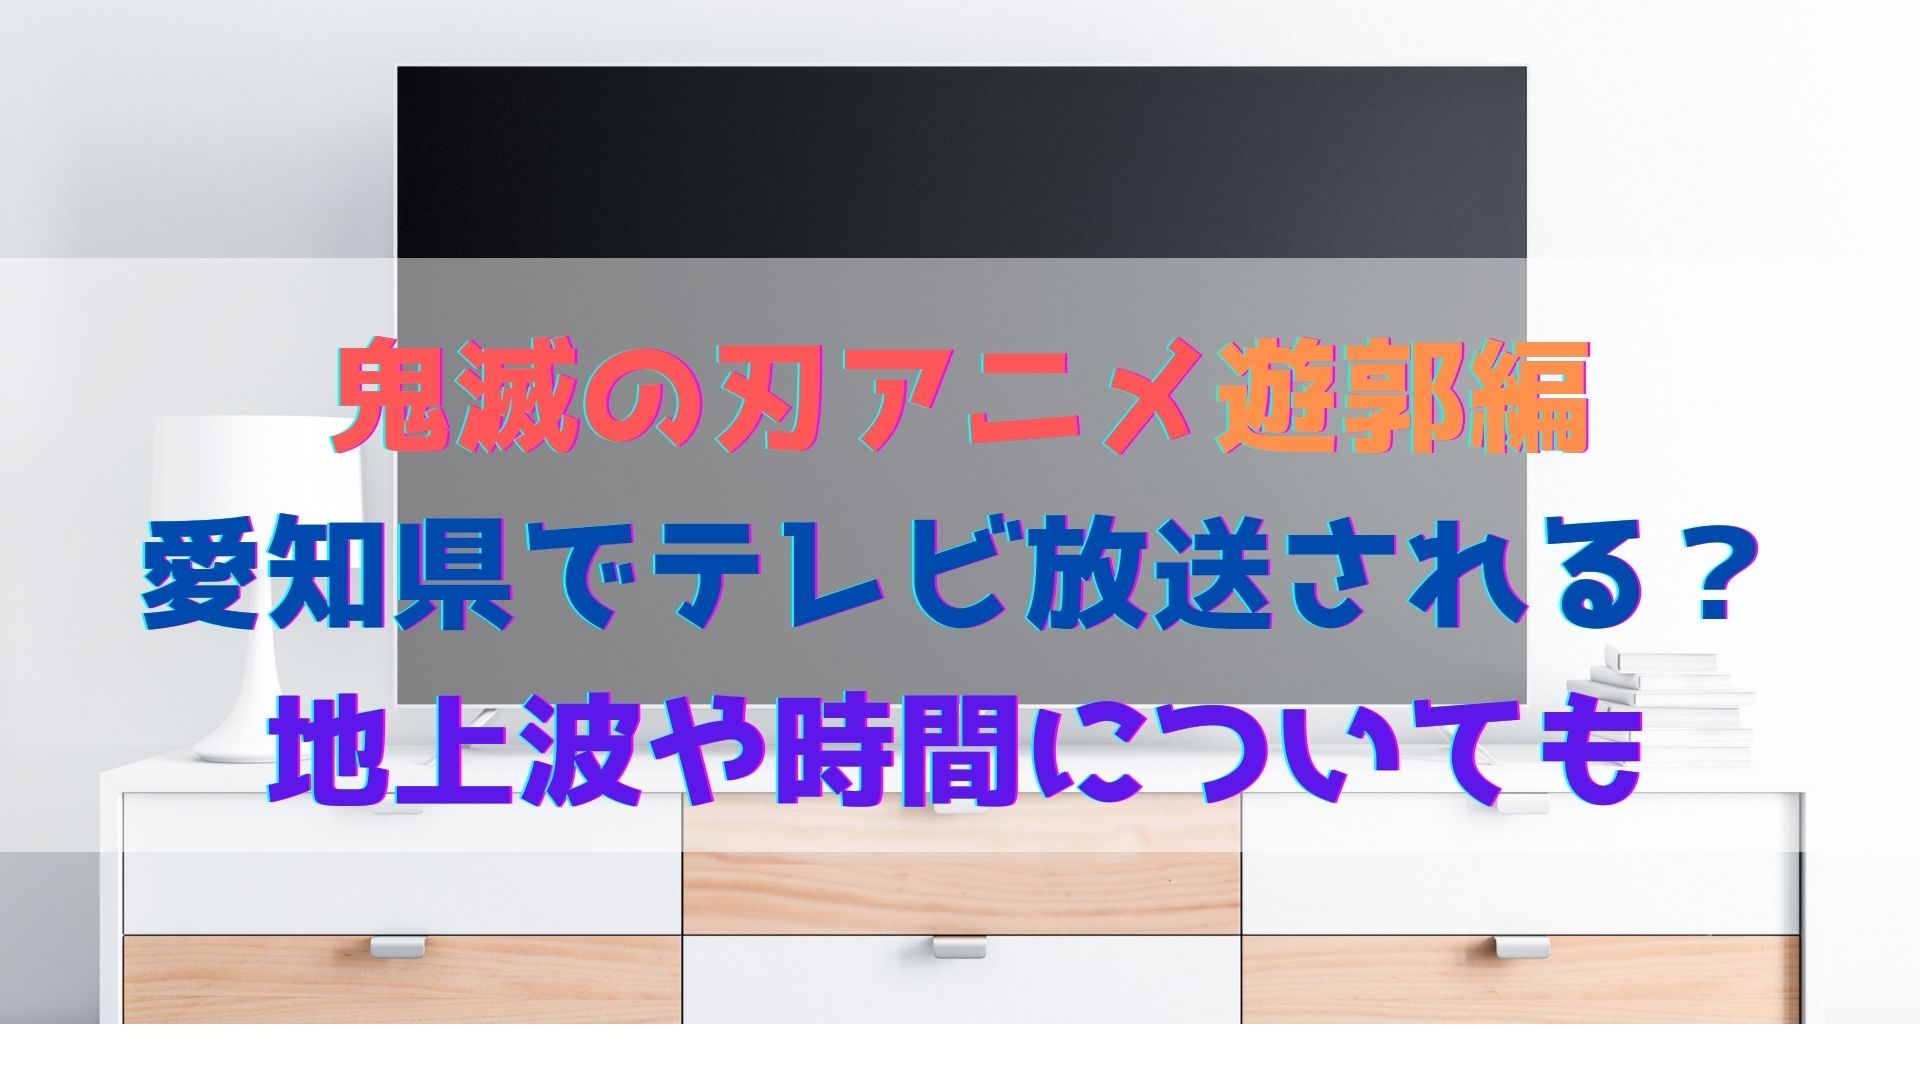 鬼滅の刃アニメ遊郭編は愛知県でテレビ放送される 地上波や時間についても ハヤ リノ